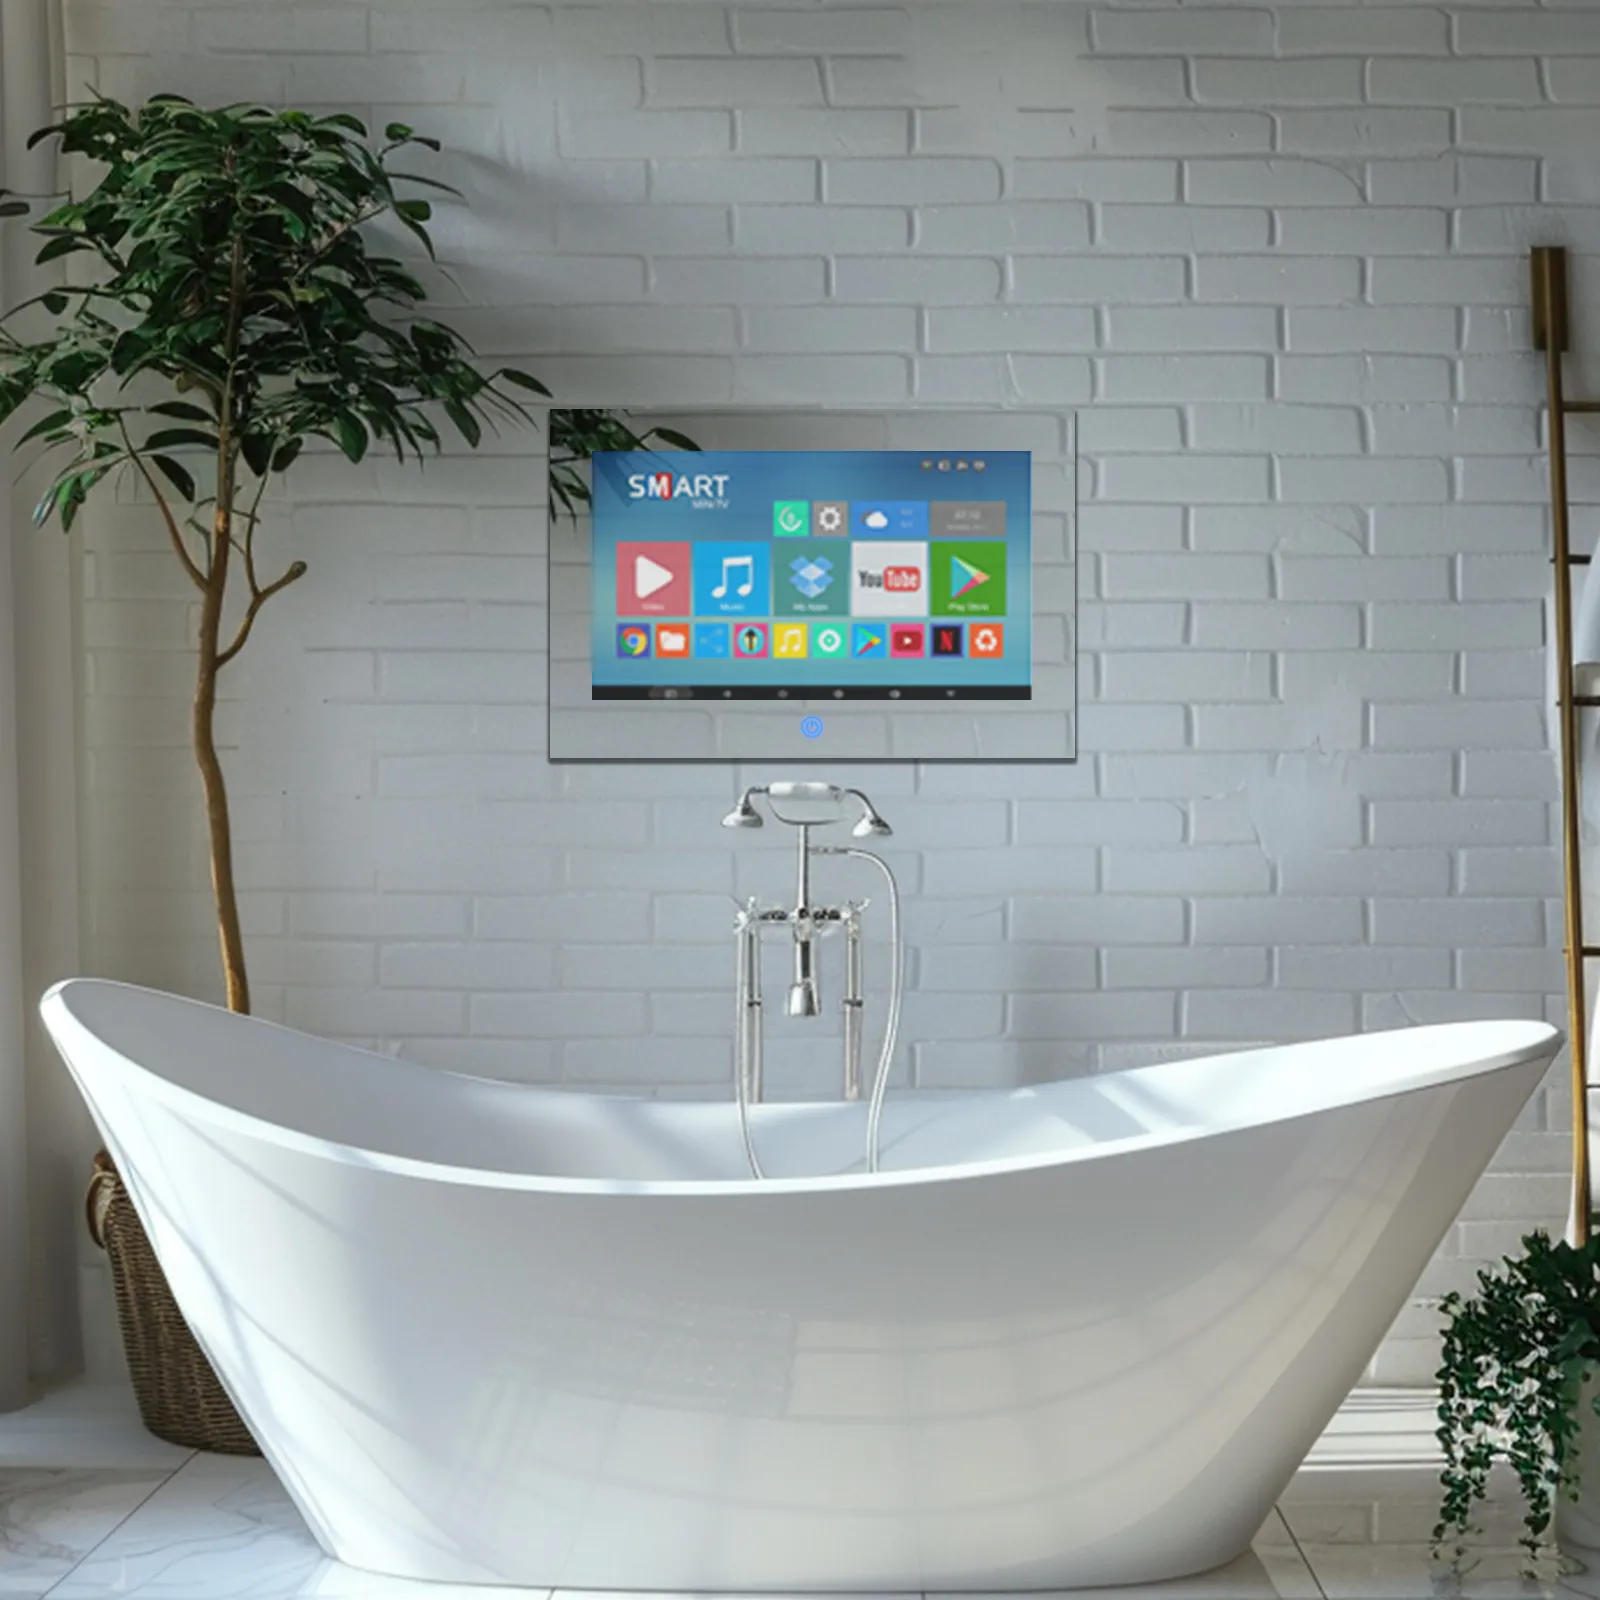 Smart baño espejo TV, 22 pulgadas Espejo TV pantalla táctil HDTV impermeable para uso en interiores y exteriores, HD Smart